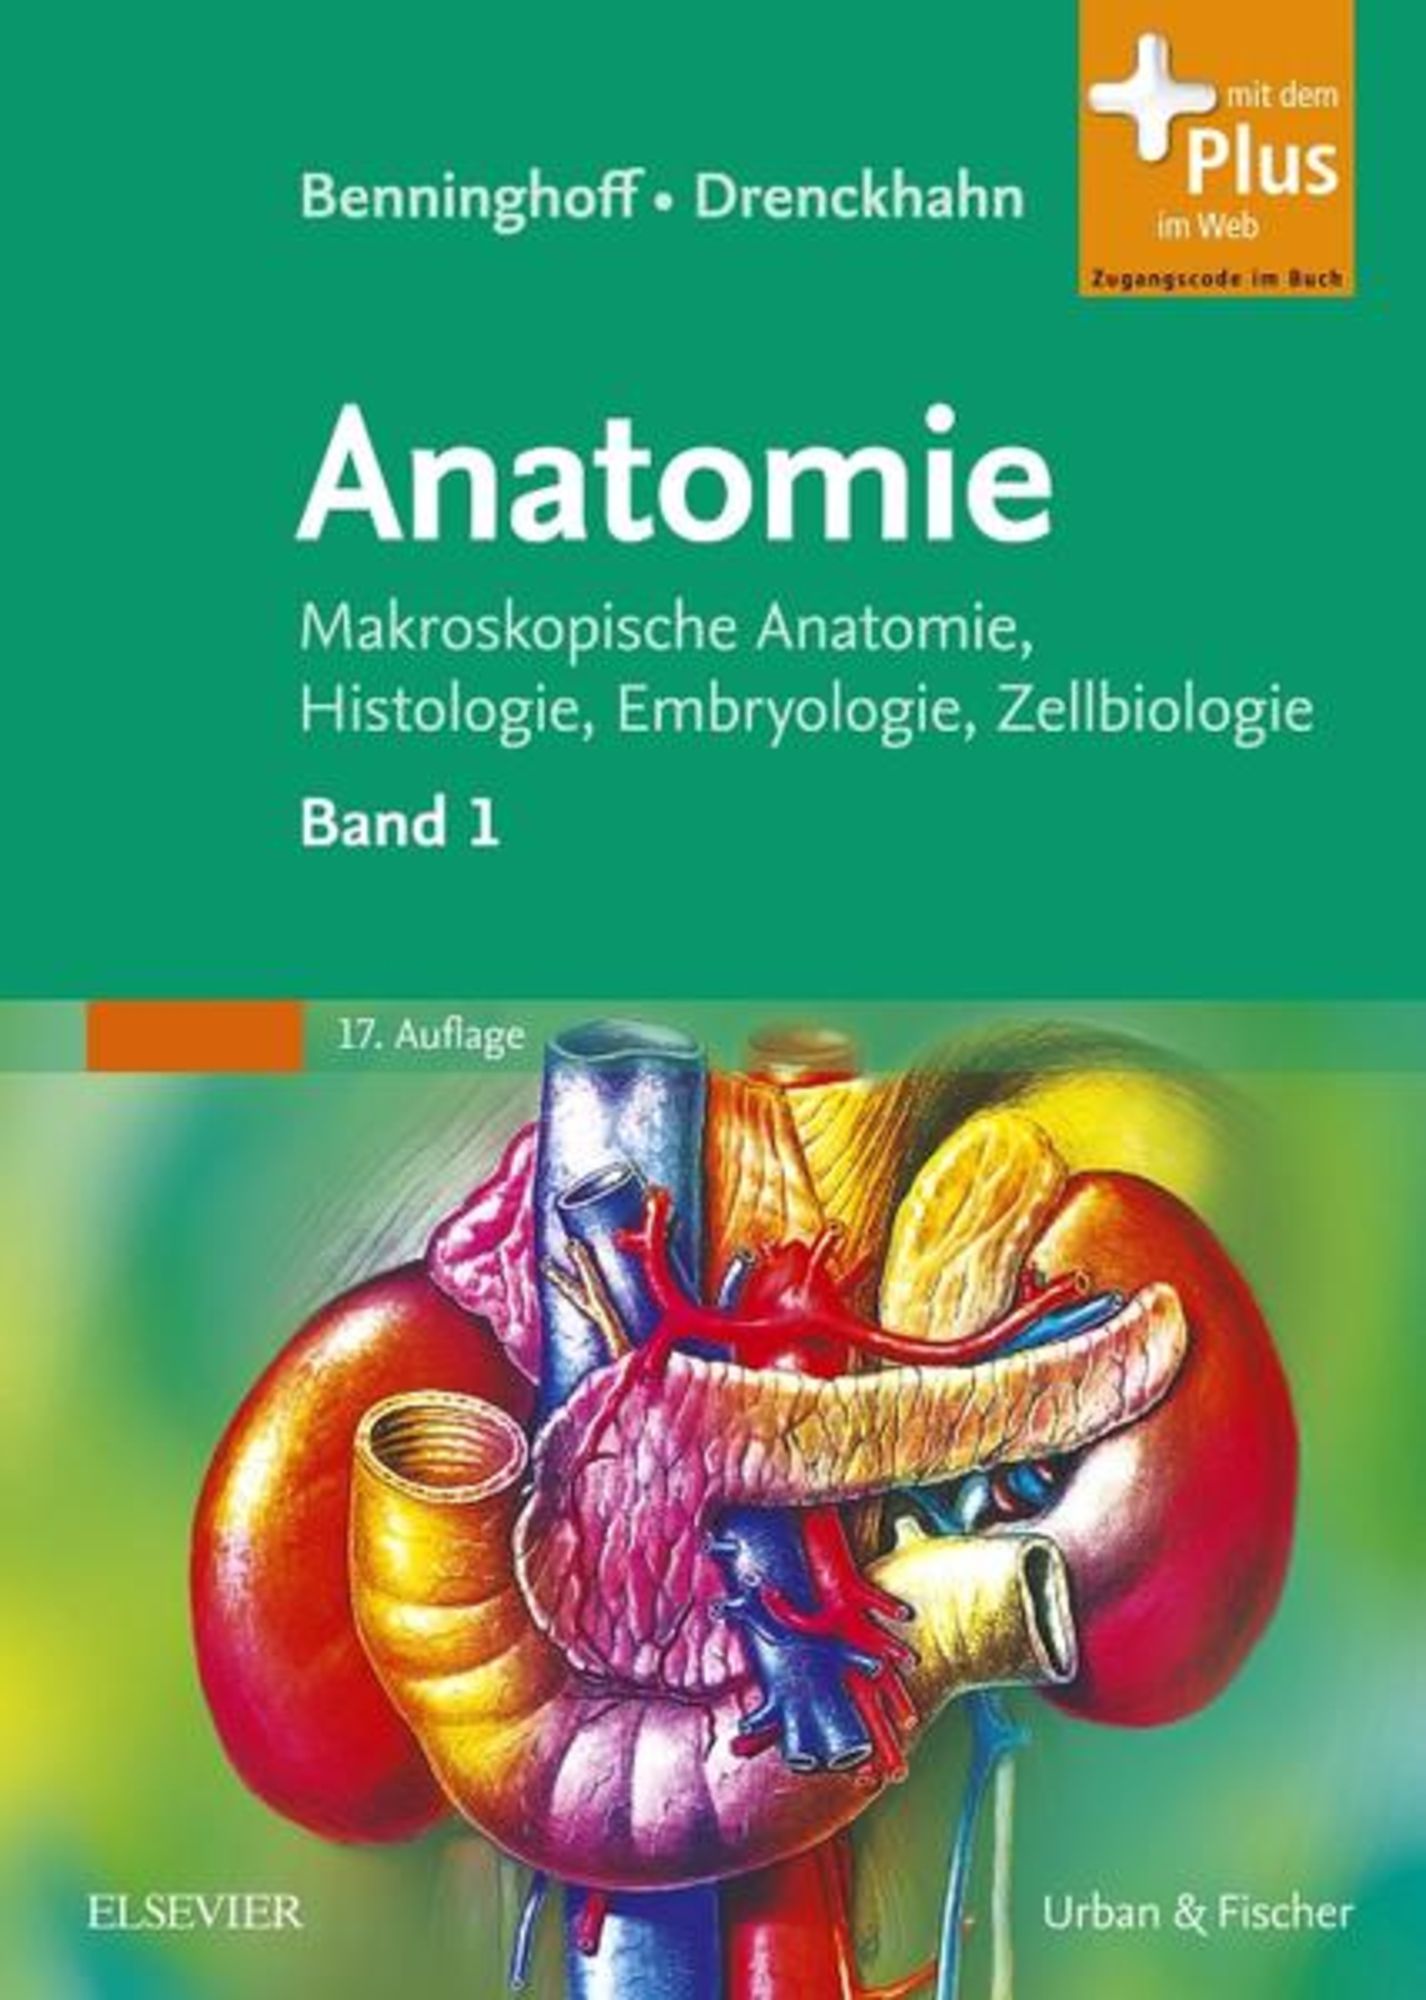 Benninghoff, Drenckhahn, Anatomie\' von \'Alfred Benninghoff\' - Buch -  \'978-3-437-42342-0\'